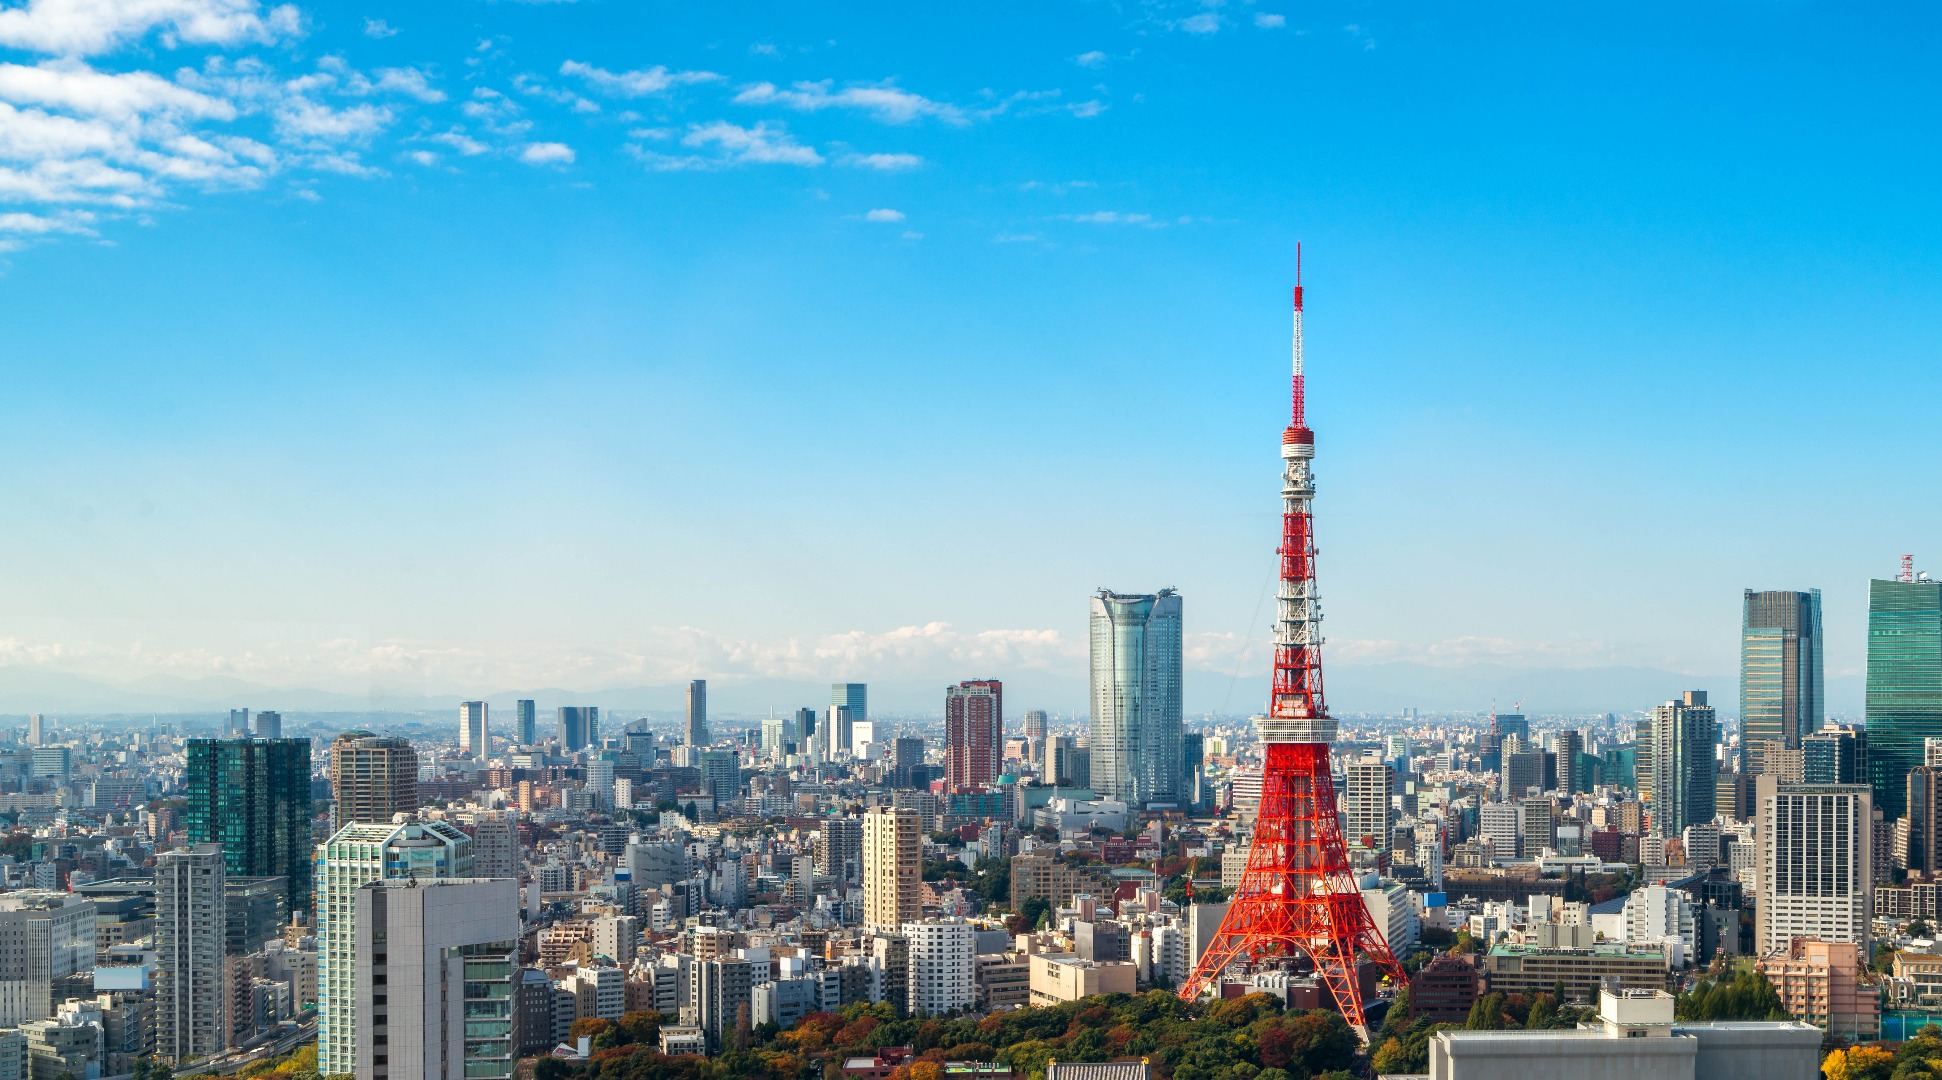 日本東京鐵塔瞭望台門票